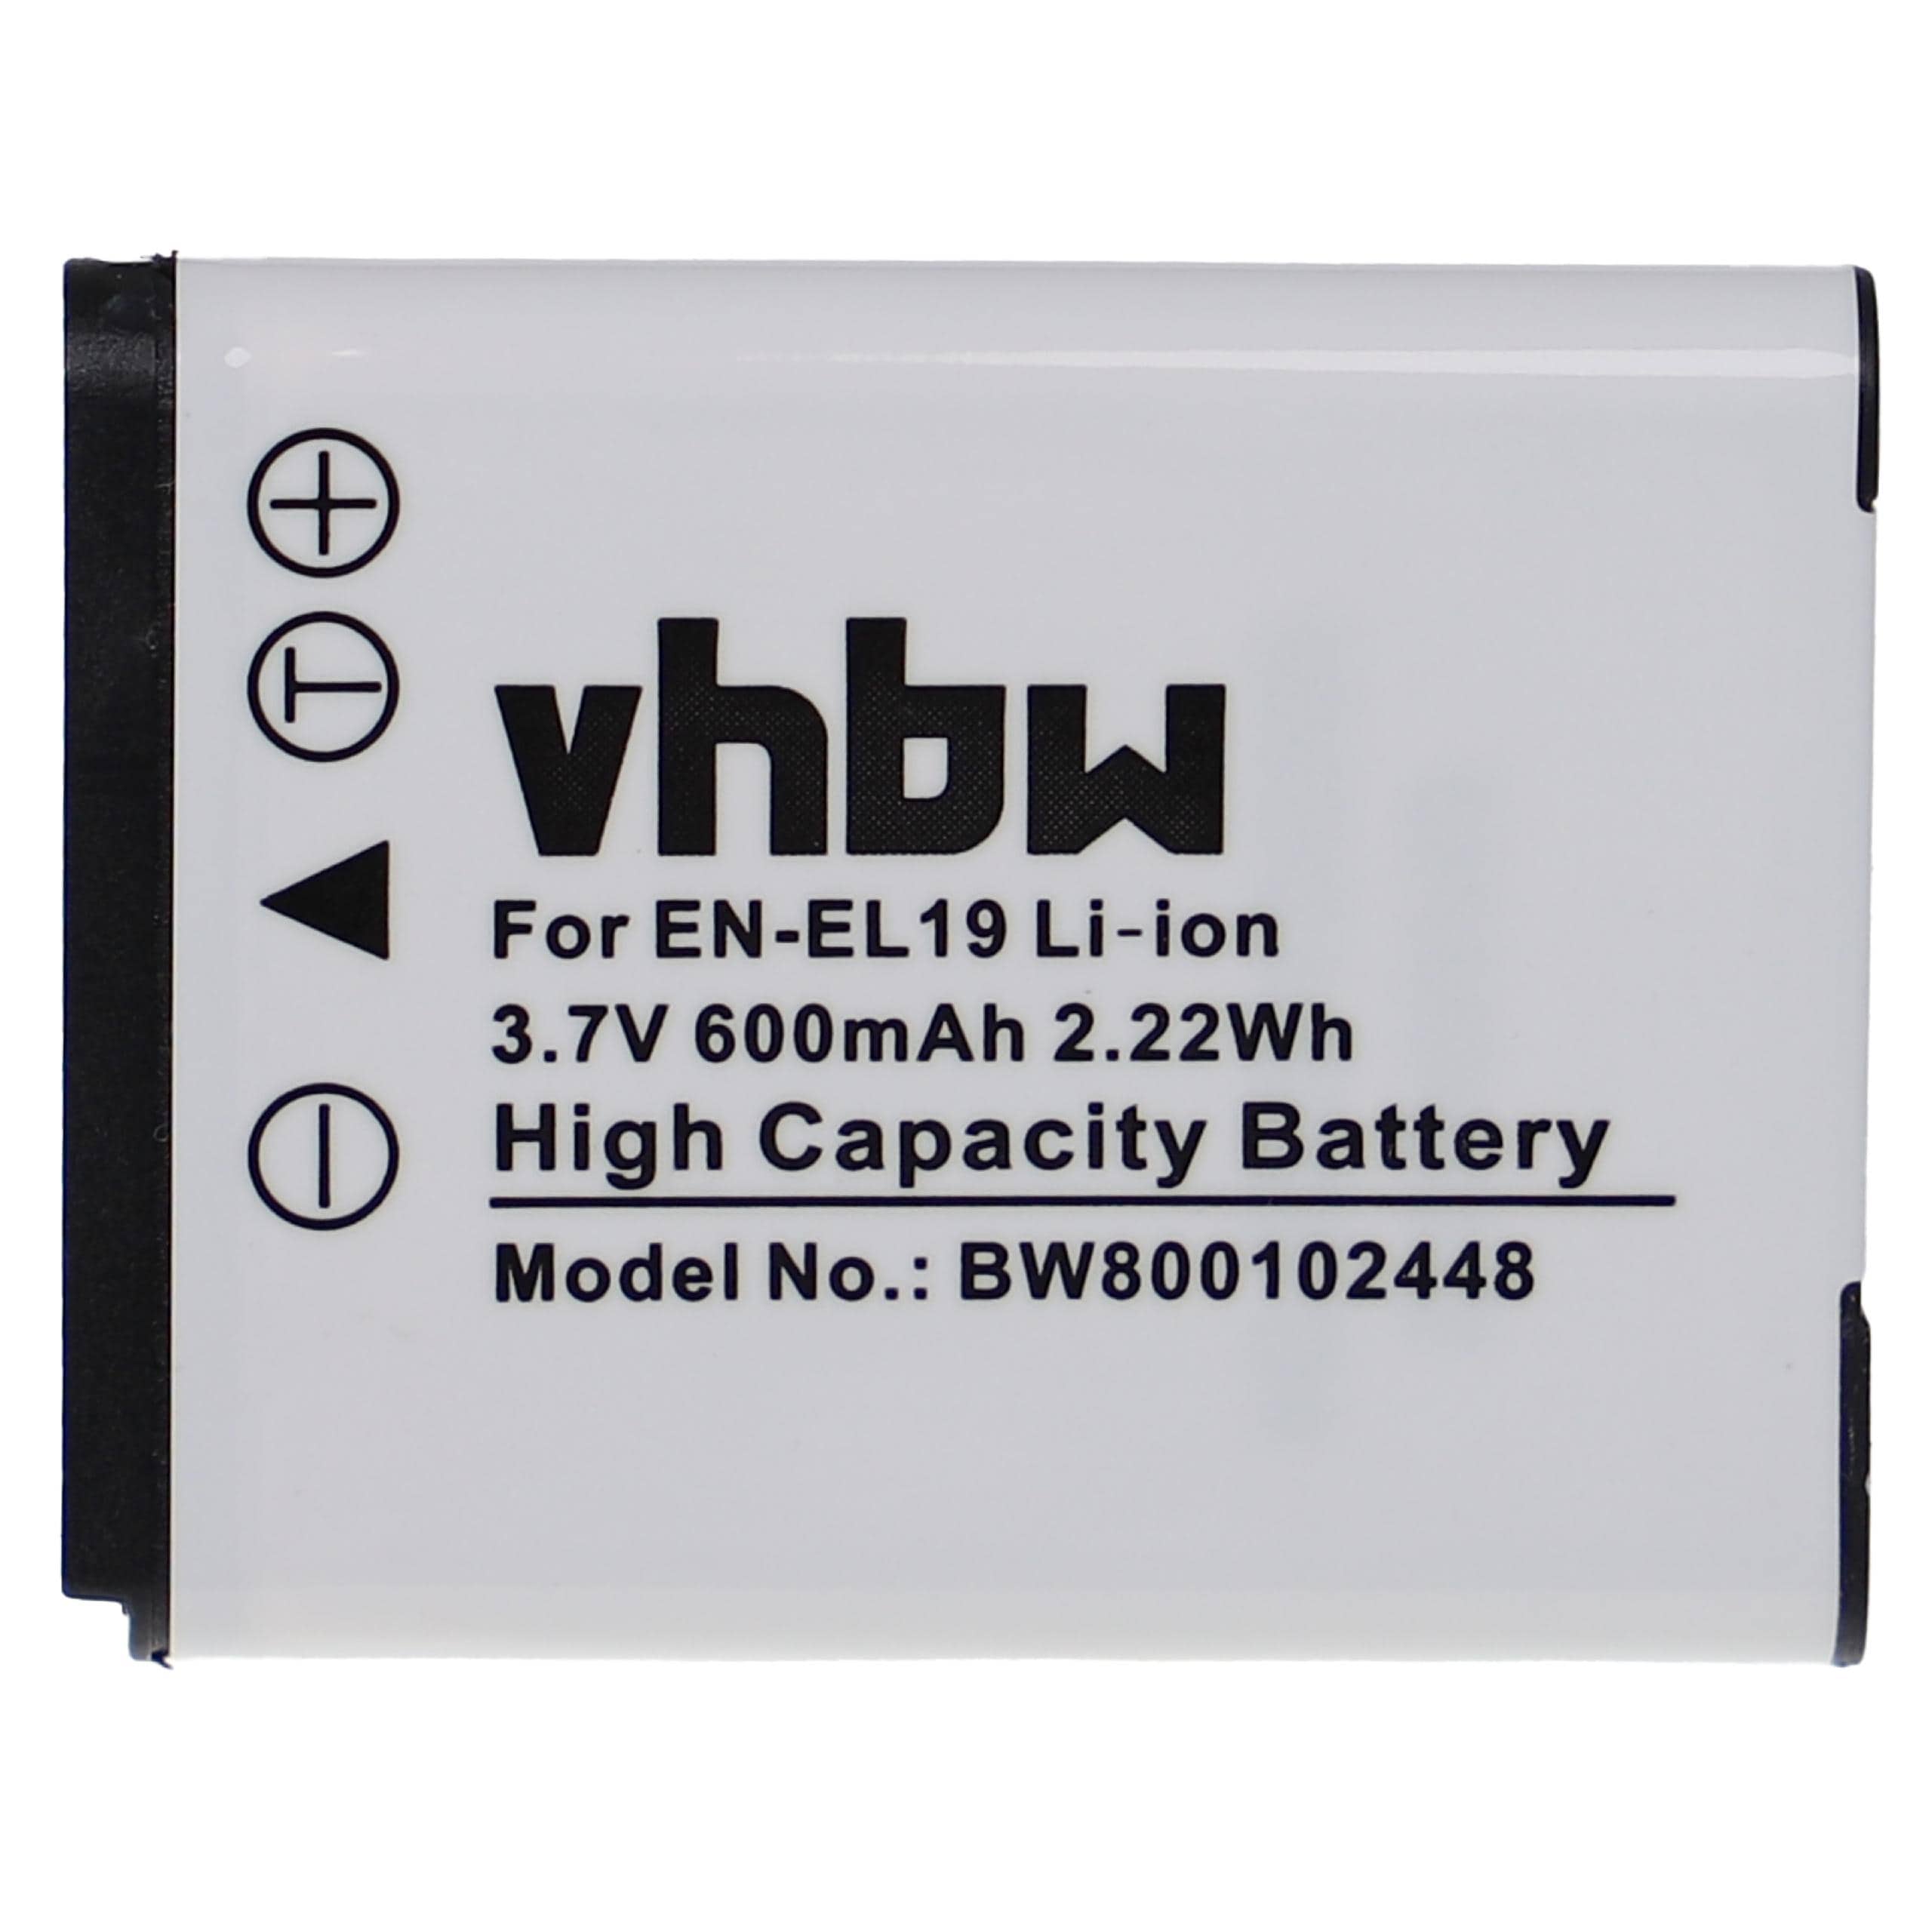 Batterie remplace Nikon EN-EL19 pour appareil photo - 600mAh 3,7V Li-ion